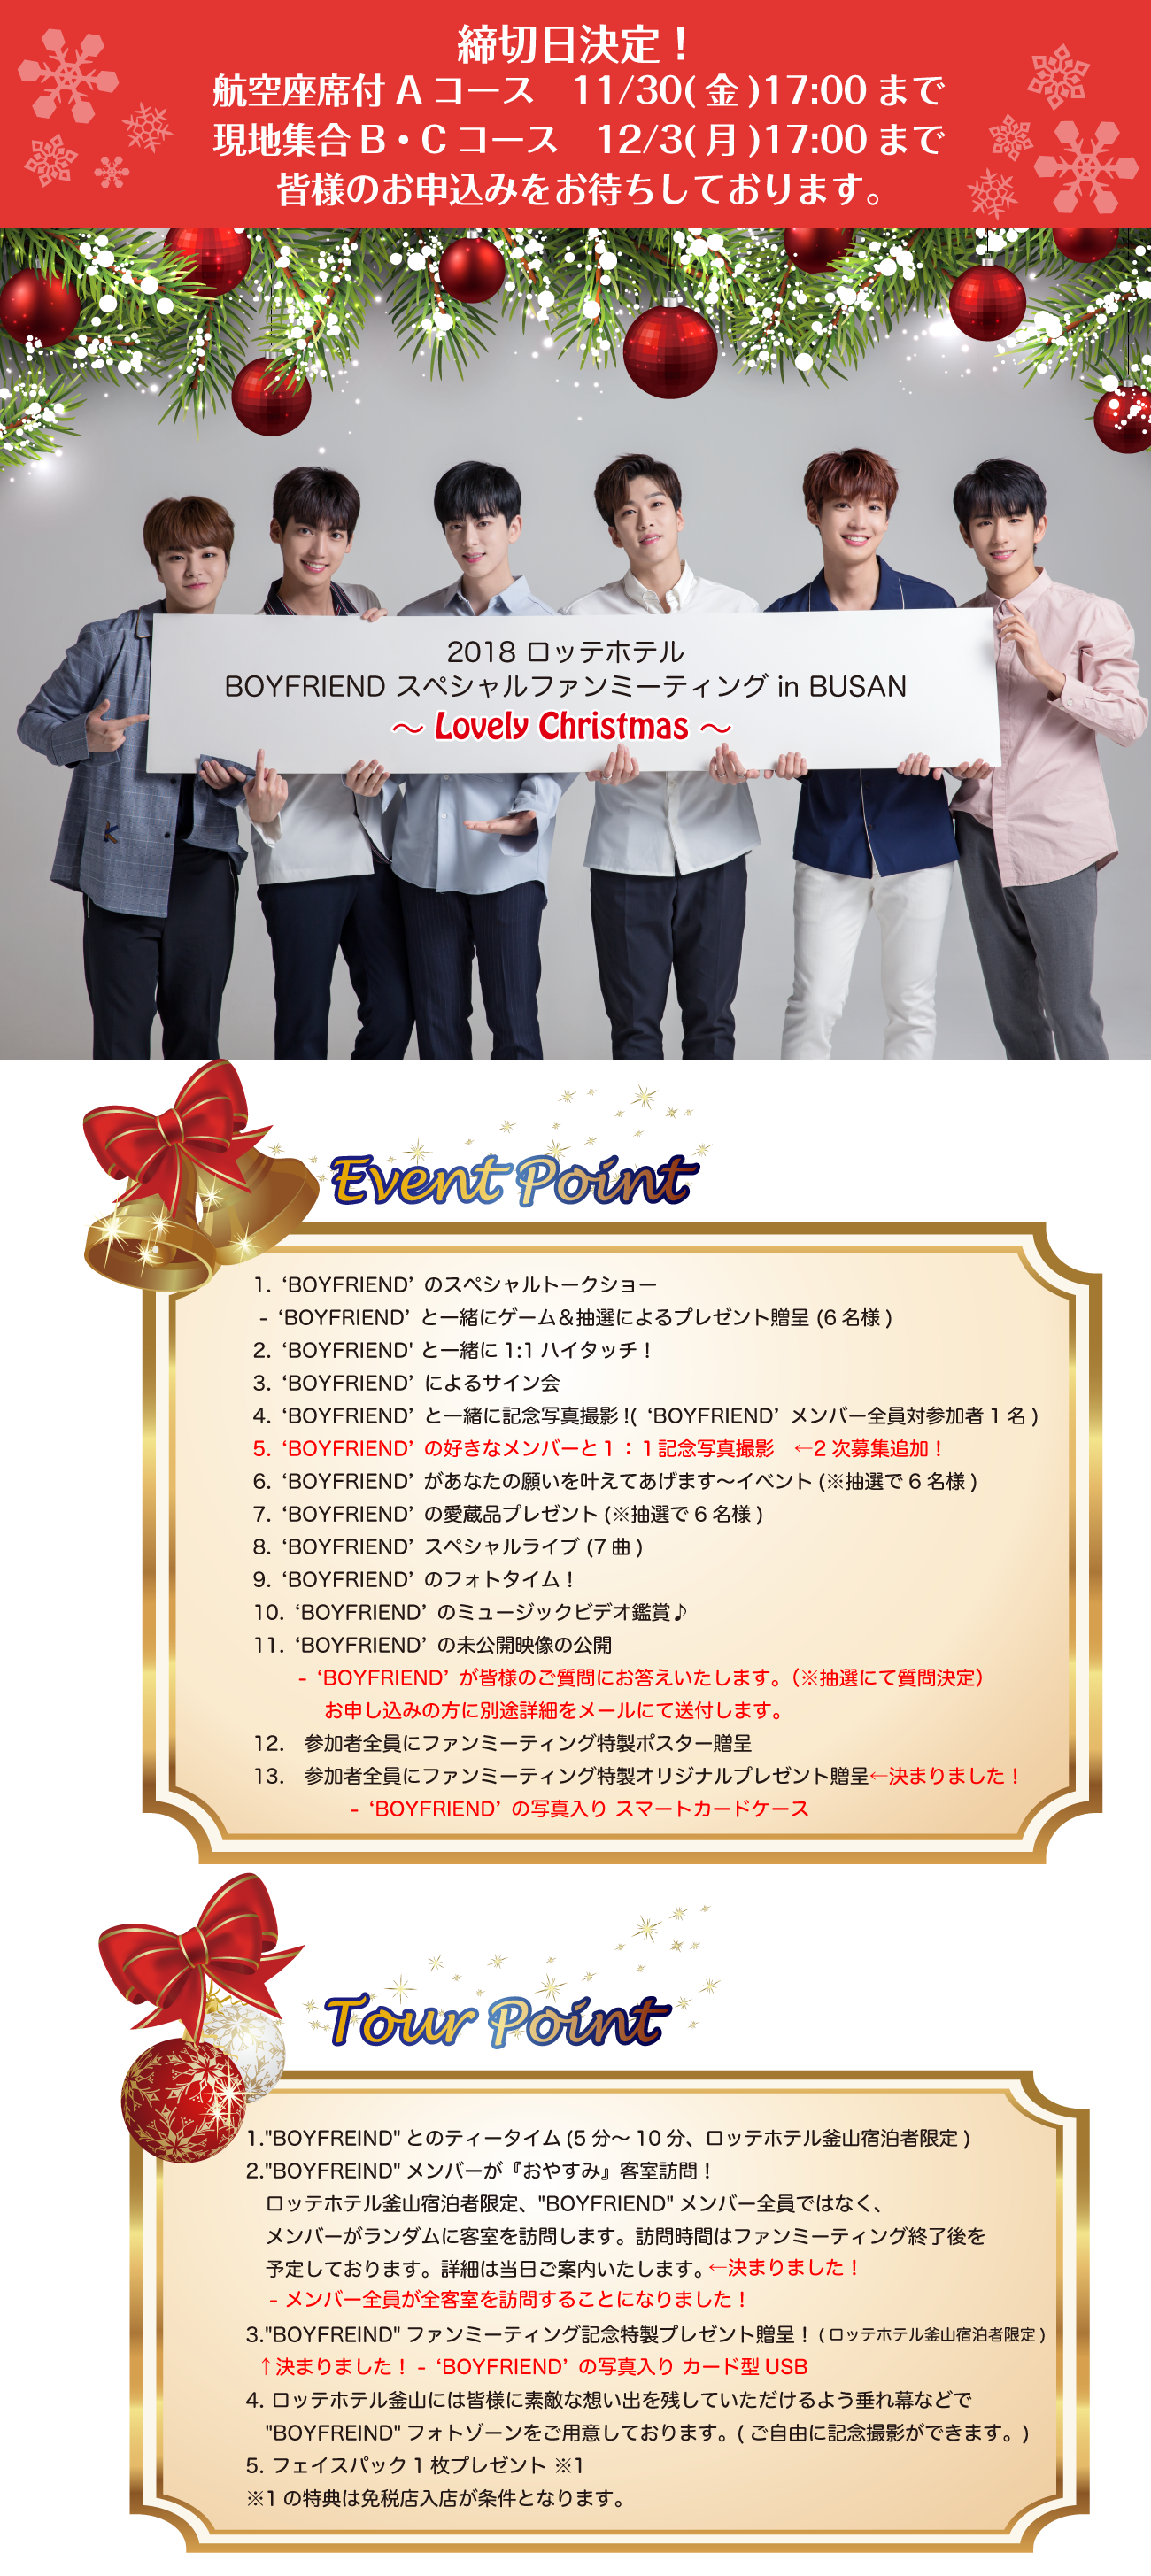 2018 ロッテホテル BOYFRIEND スペシャルファンミーティング in BUSAN ～ Lovely Christmas ～